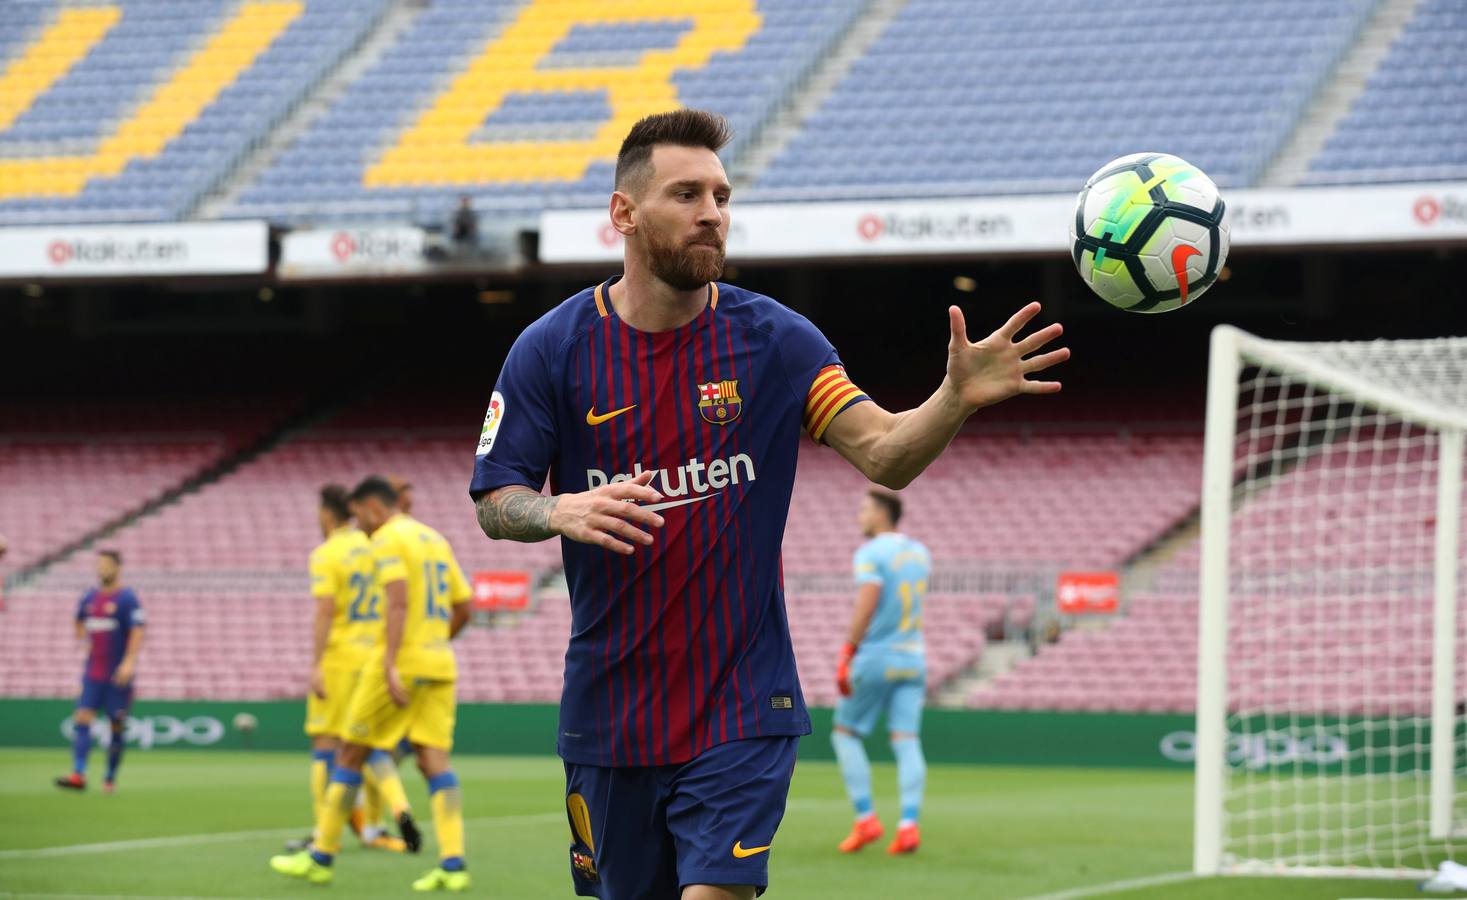 Las mejores imágenes del partido de la séptima joranda de Liga entre el Barcelona y e Las Palmas, que se ha disputado a puerta cerrada.